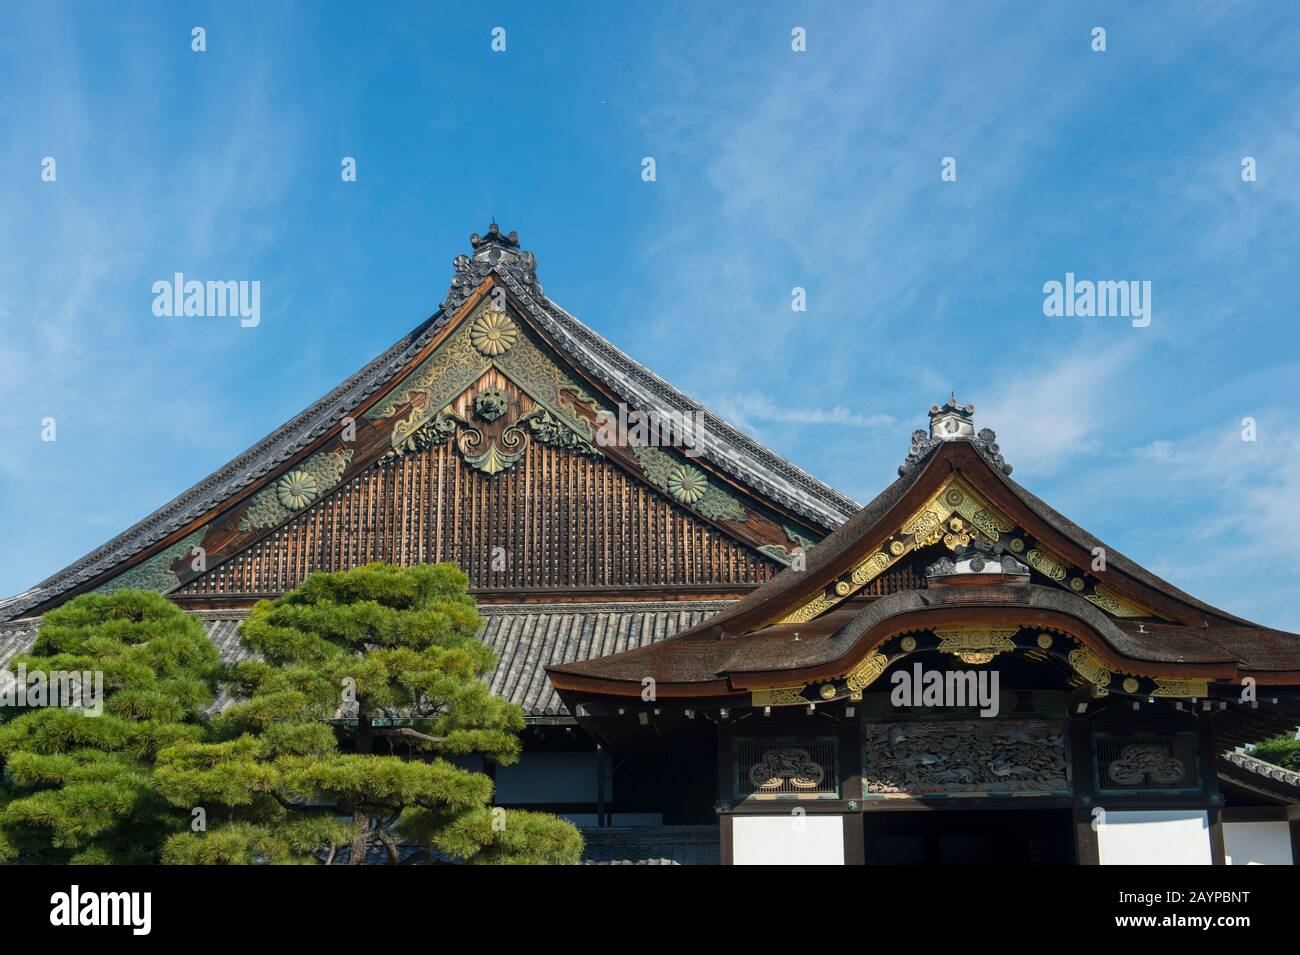 Dettaglio del tetto del Castello Nijo a Kyoto, Giappone. Foto Stock